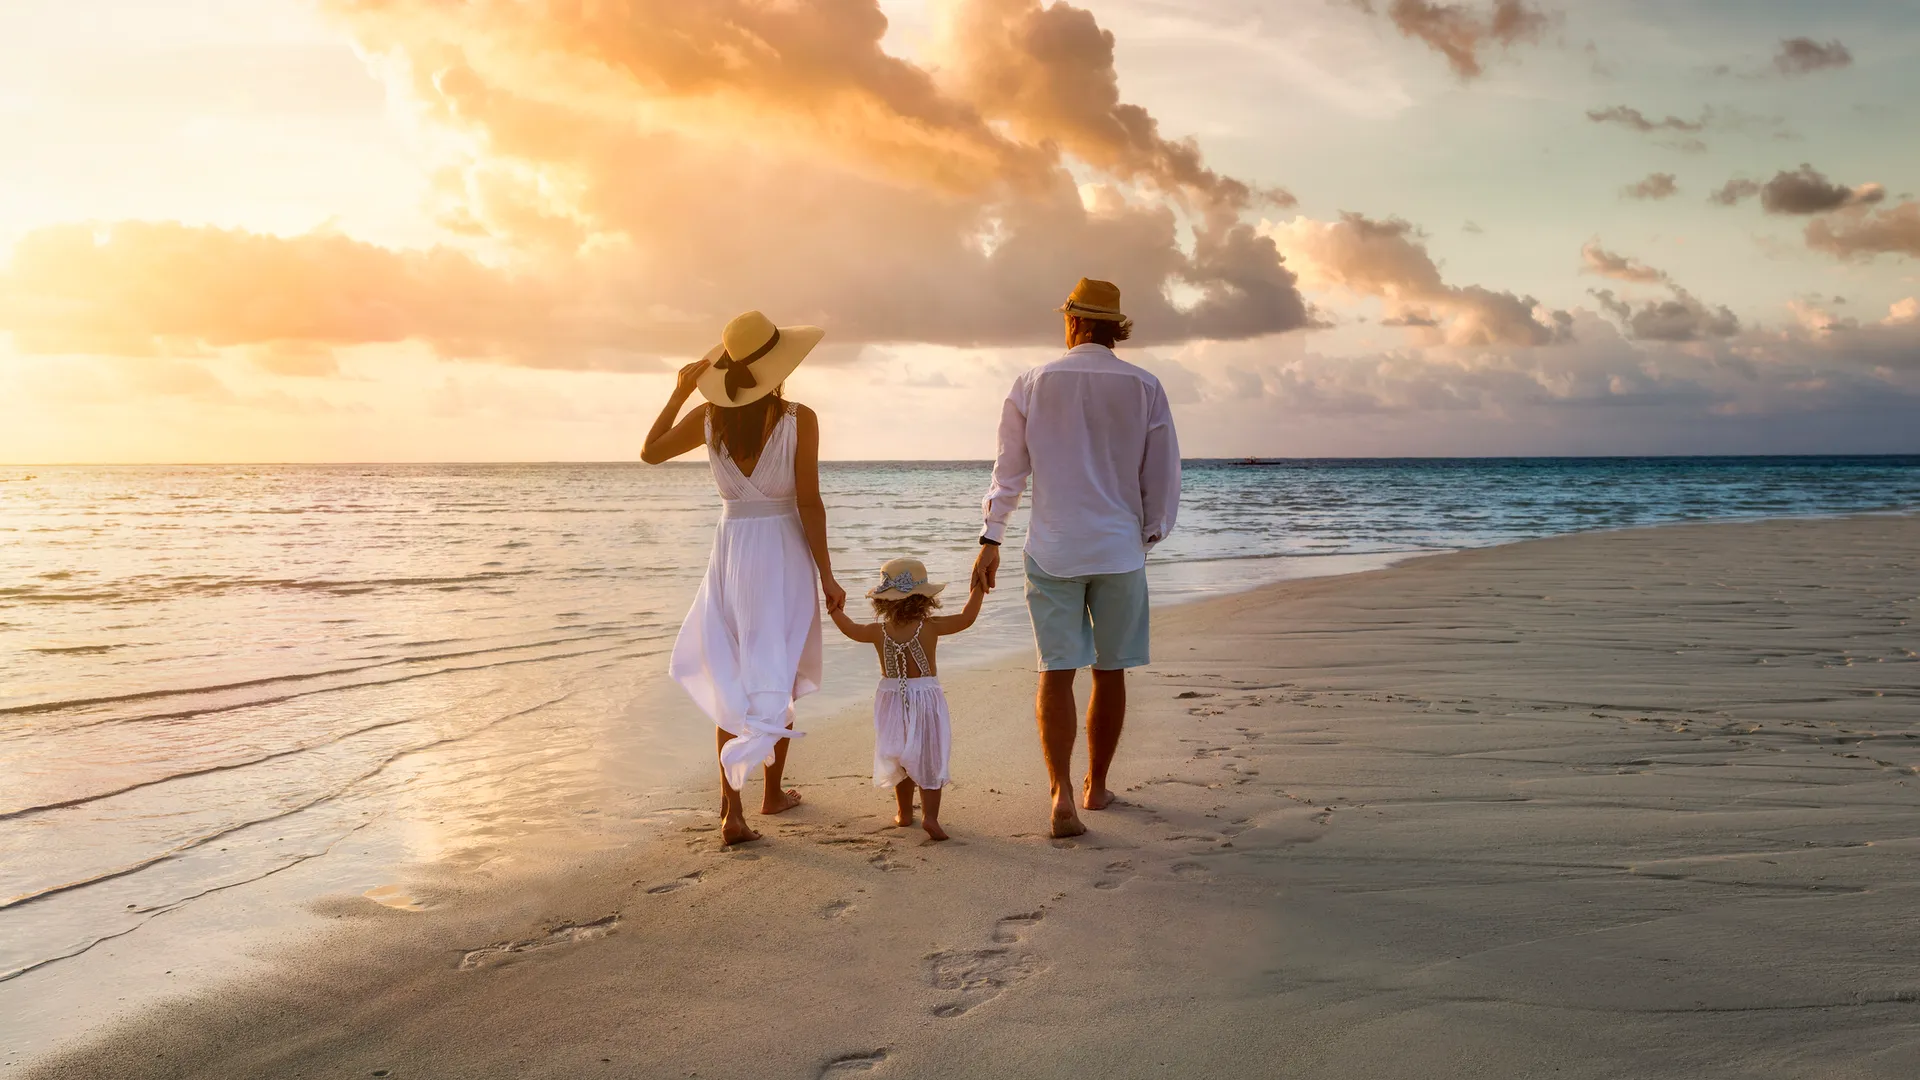 一个优雅的家庭在夏天白色衣服手拉手走下来一个热带天堂海滩在日落时间和享受他们的假期时间。